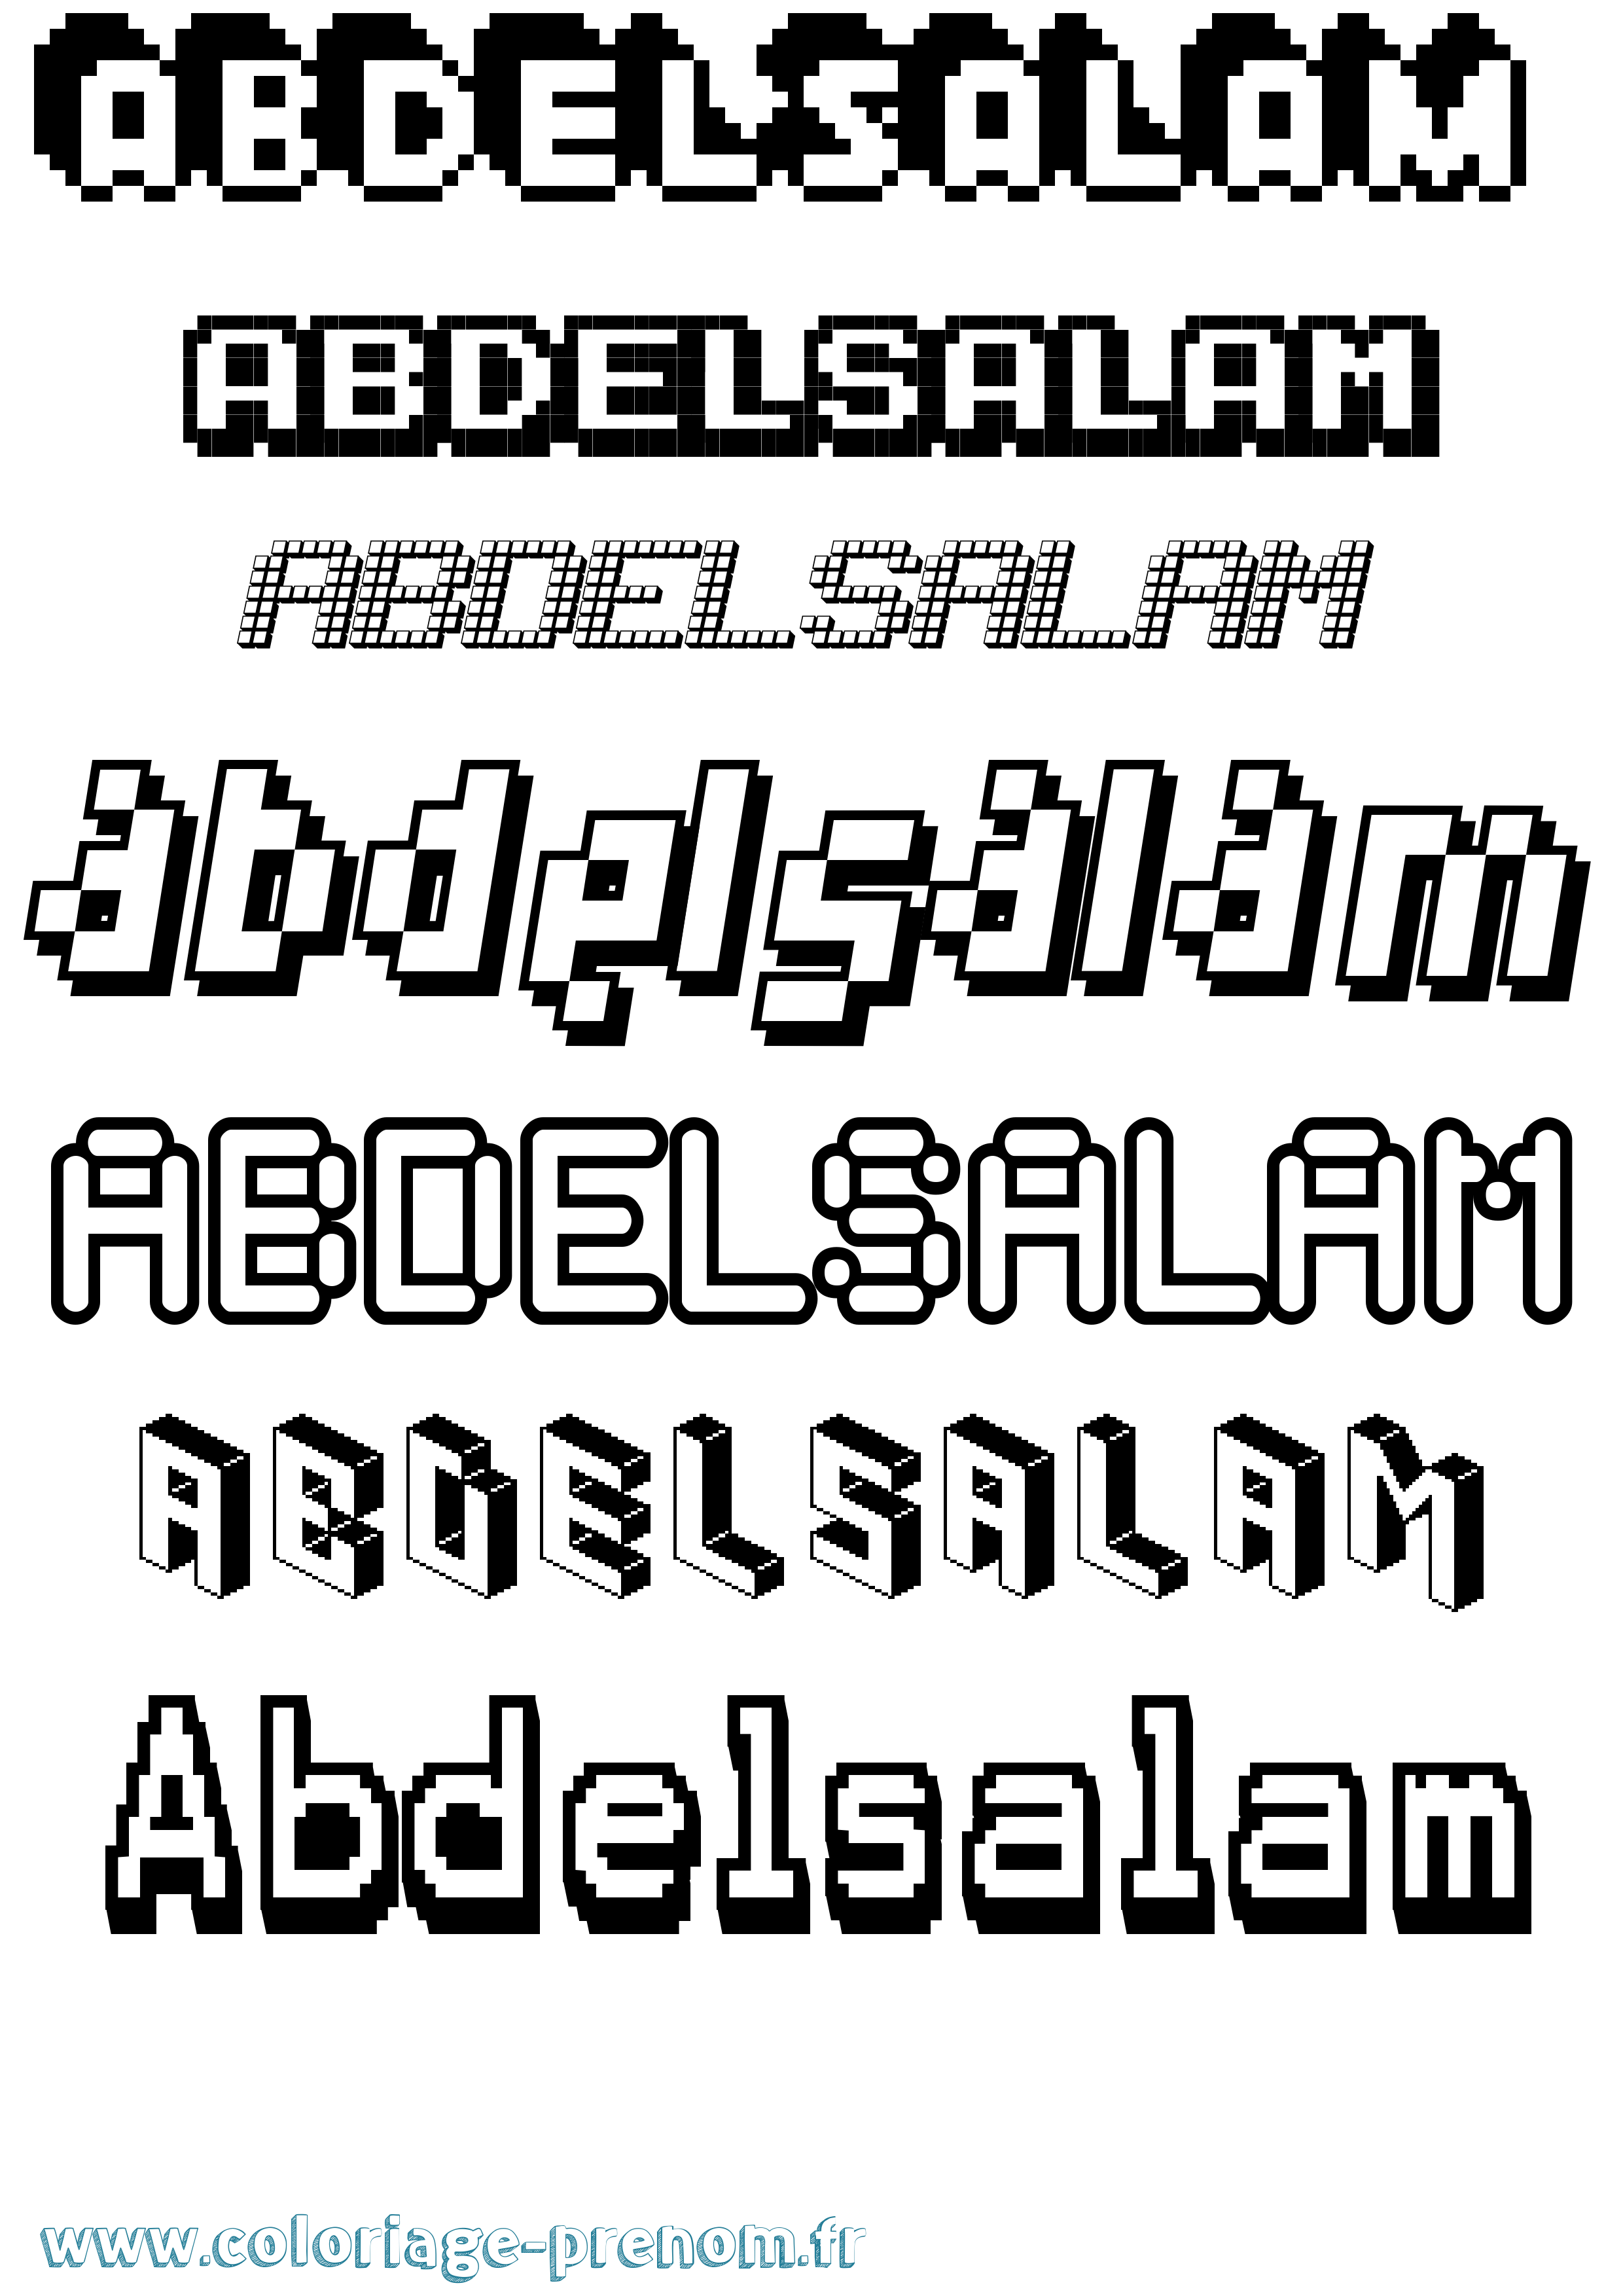 Coloriage prénom Abdelsalam Pixel